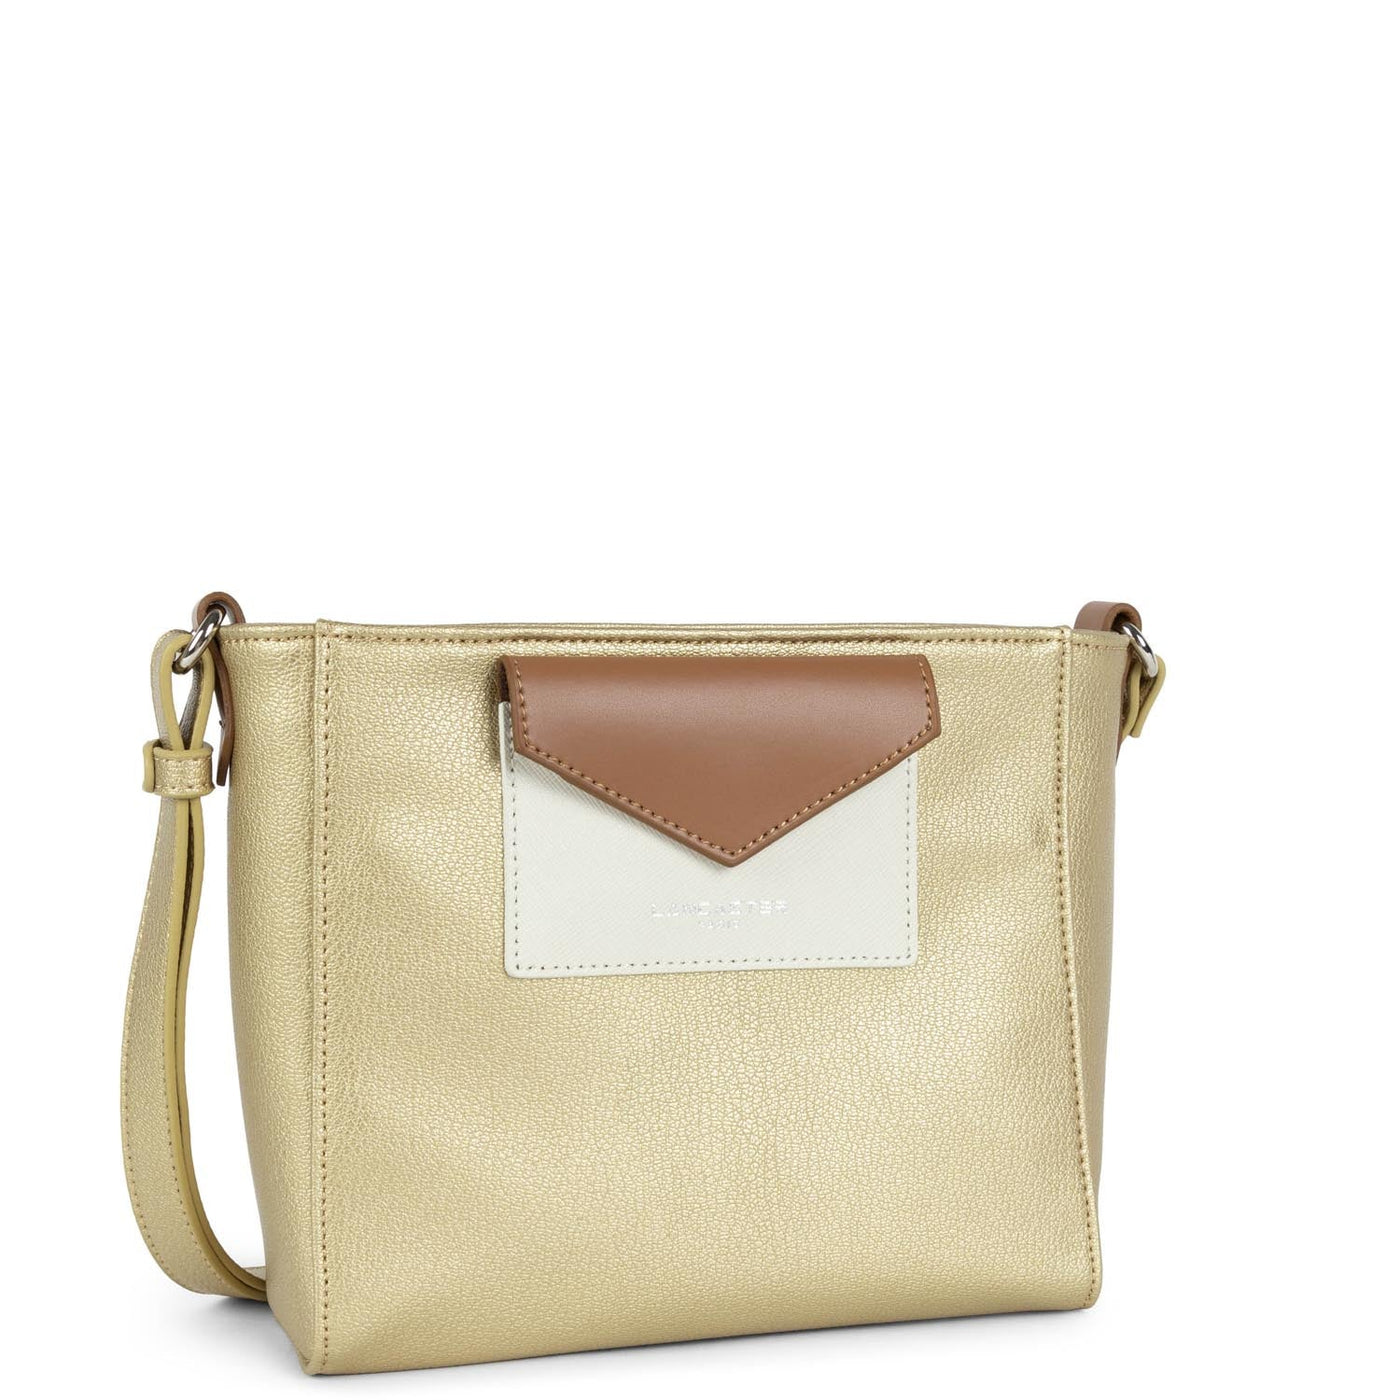 crossbody bag - maya #couleur_or-mat-beige-camel